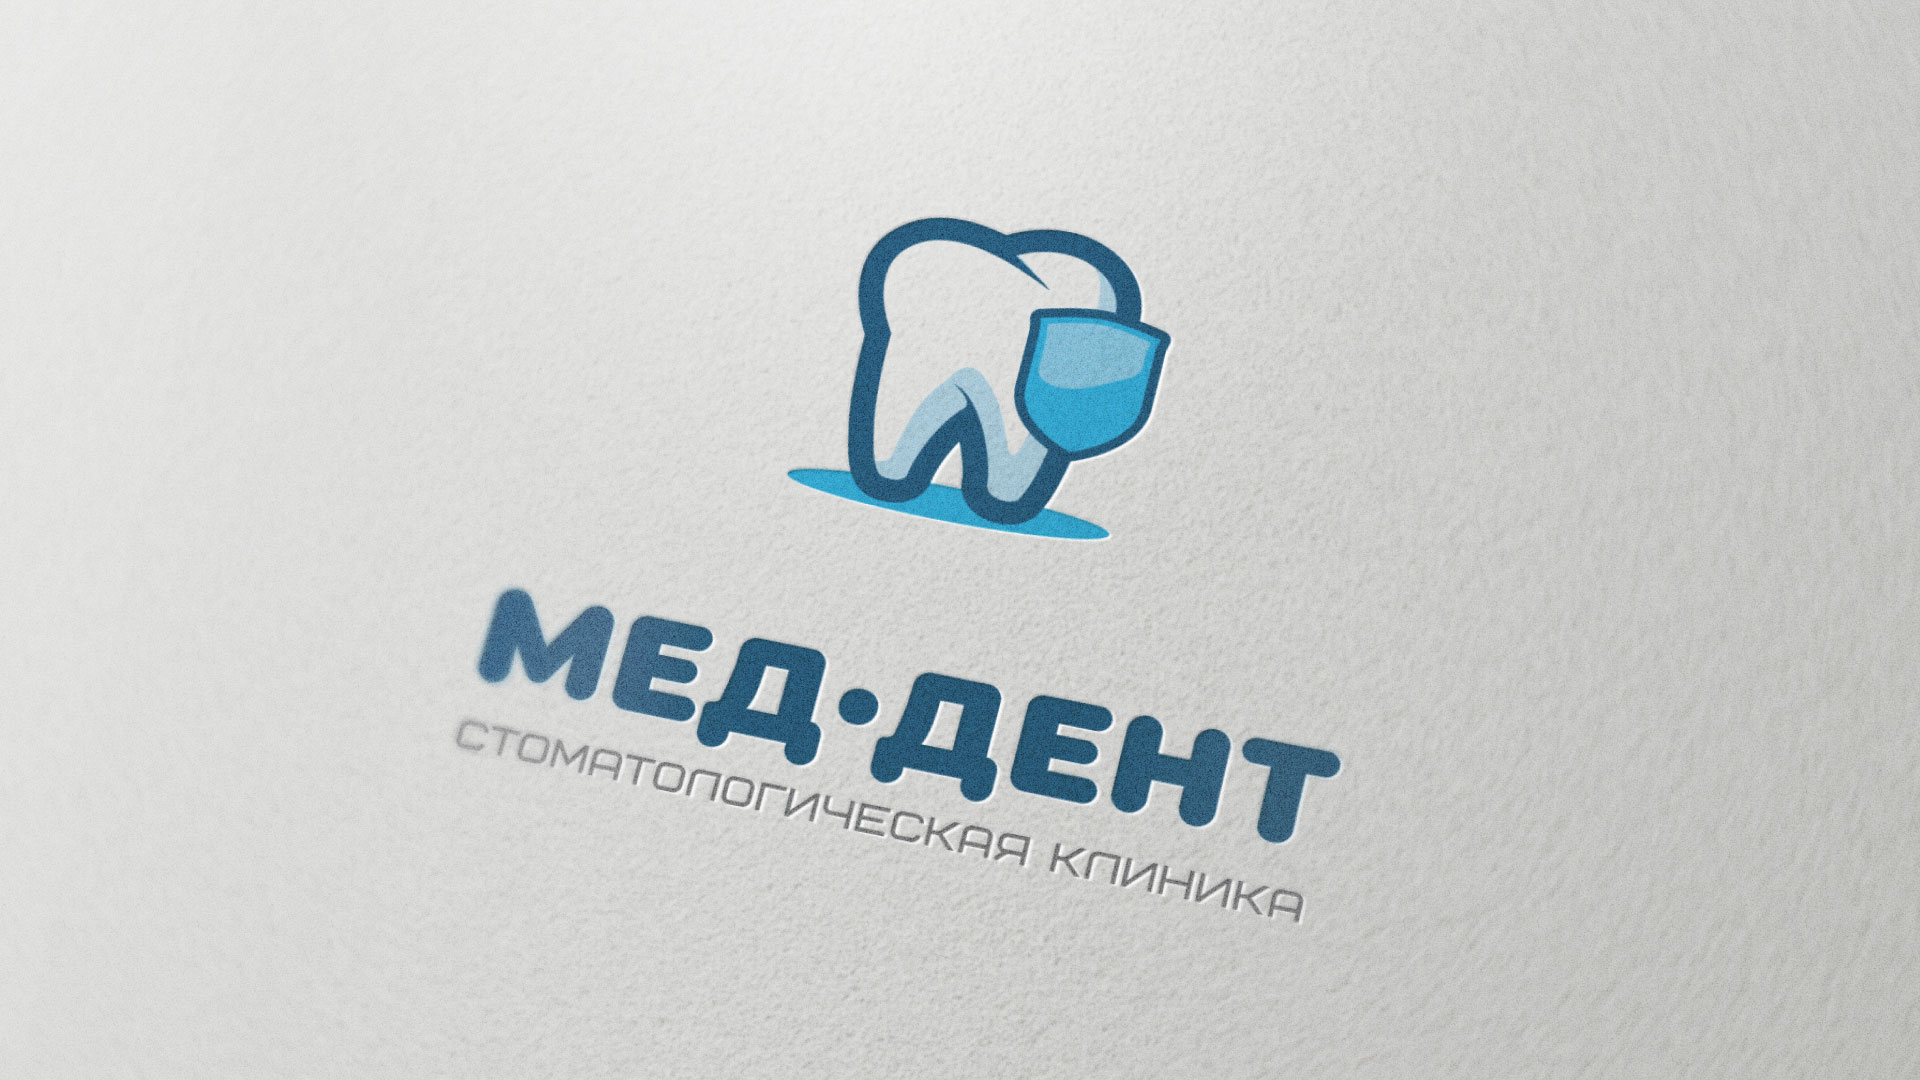 Разработка логотипа стоматологической клиники «МЕД-ДЕНТ» в 